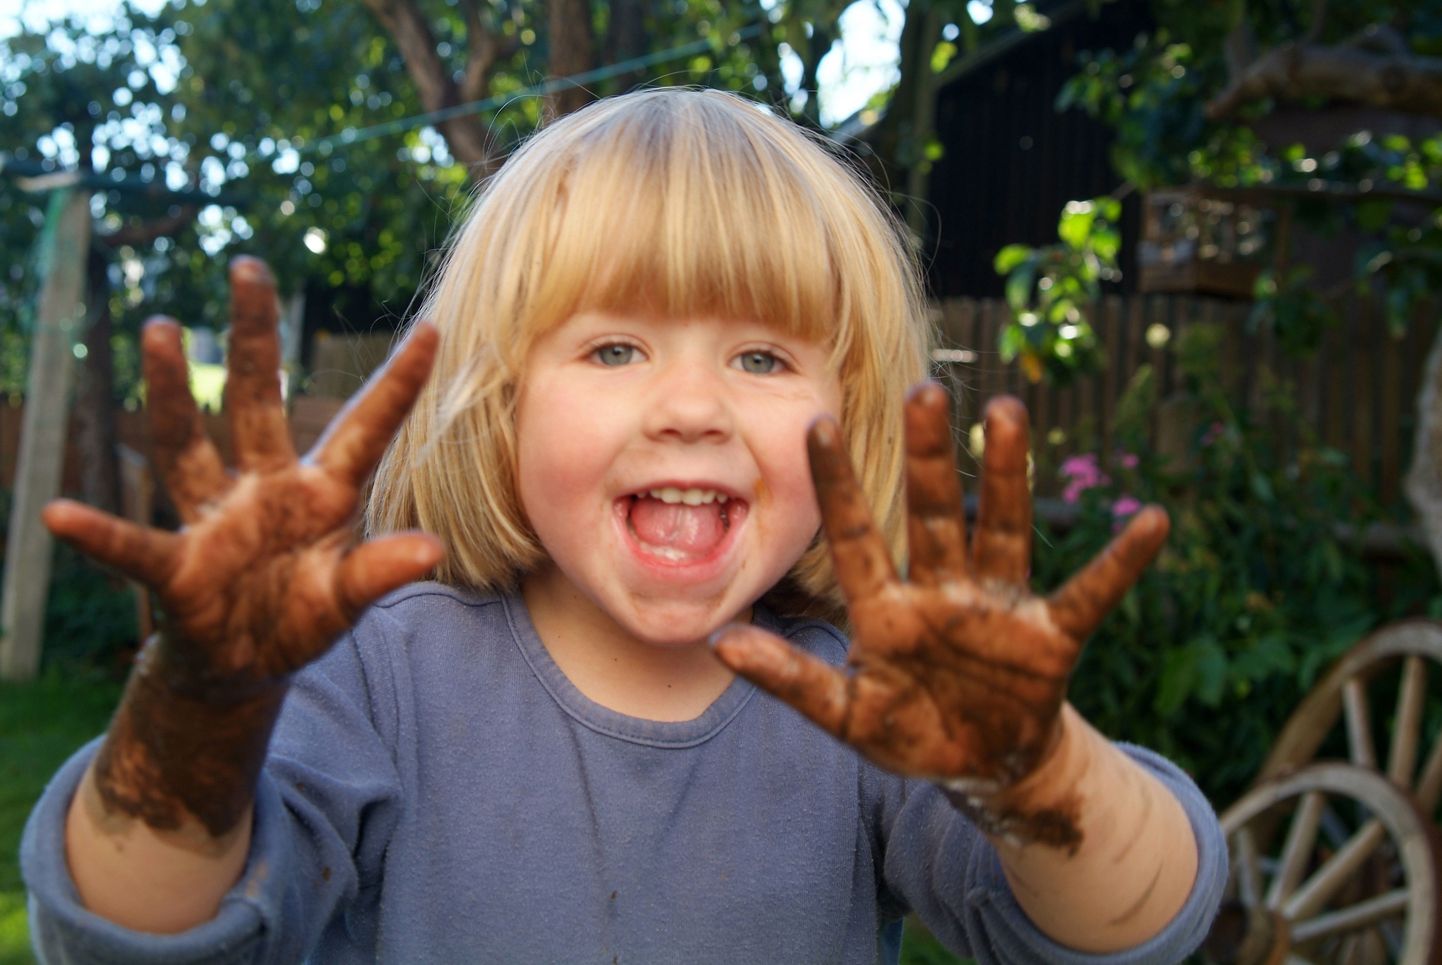 Mikroobieksperdi sõnul pole põhjust muretseda, kui lapse käed või nägu saavad mudaga kokku.